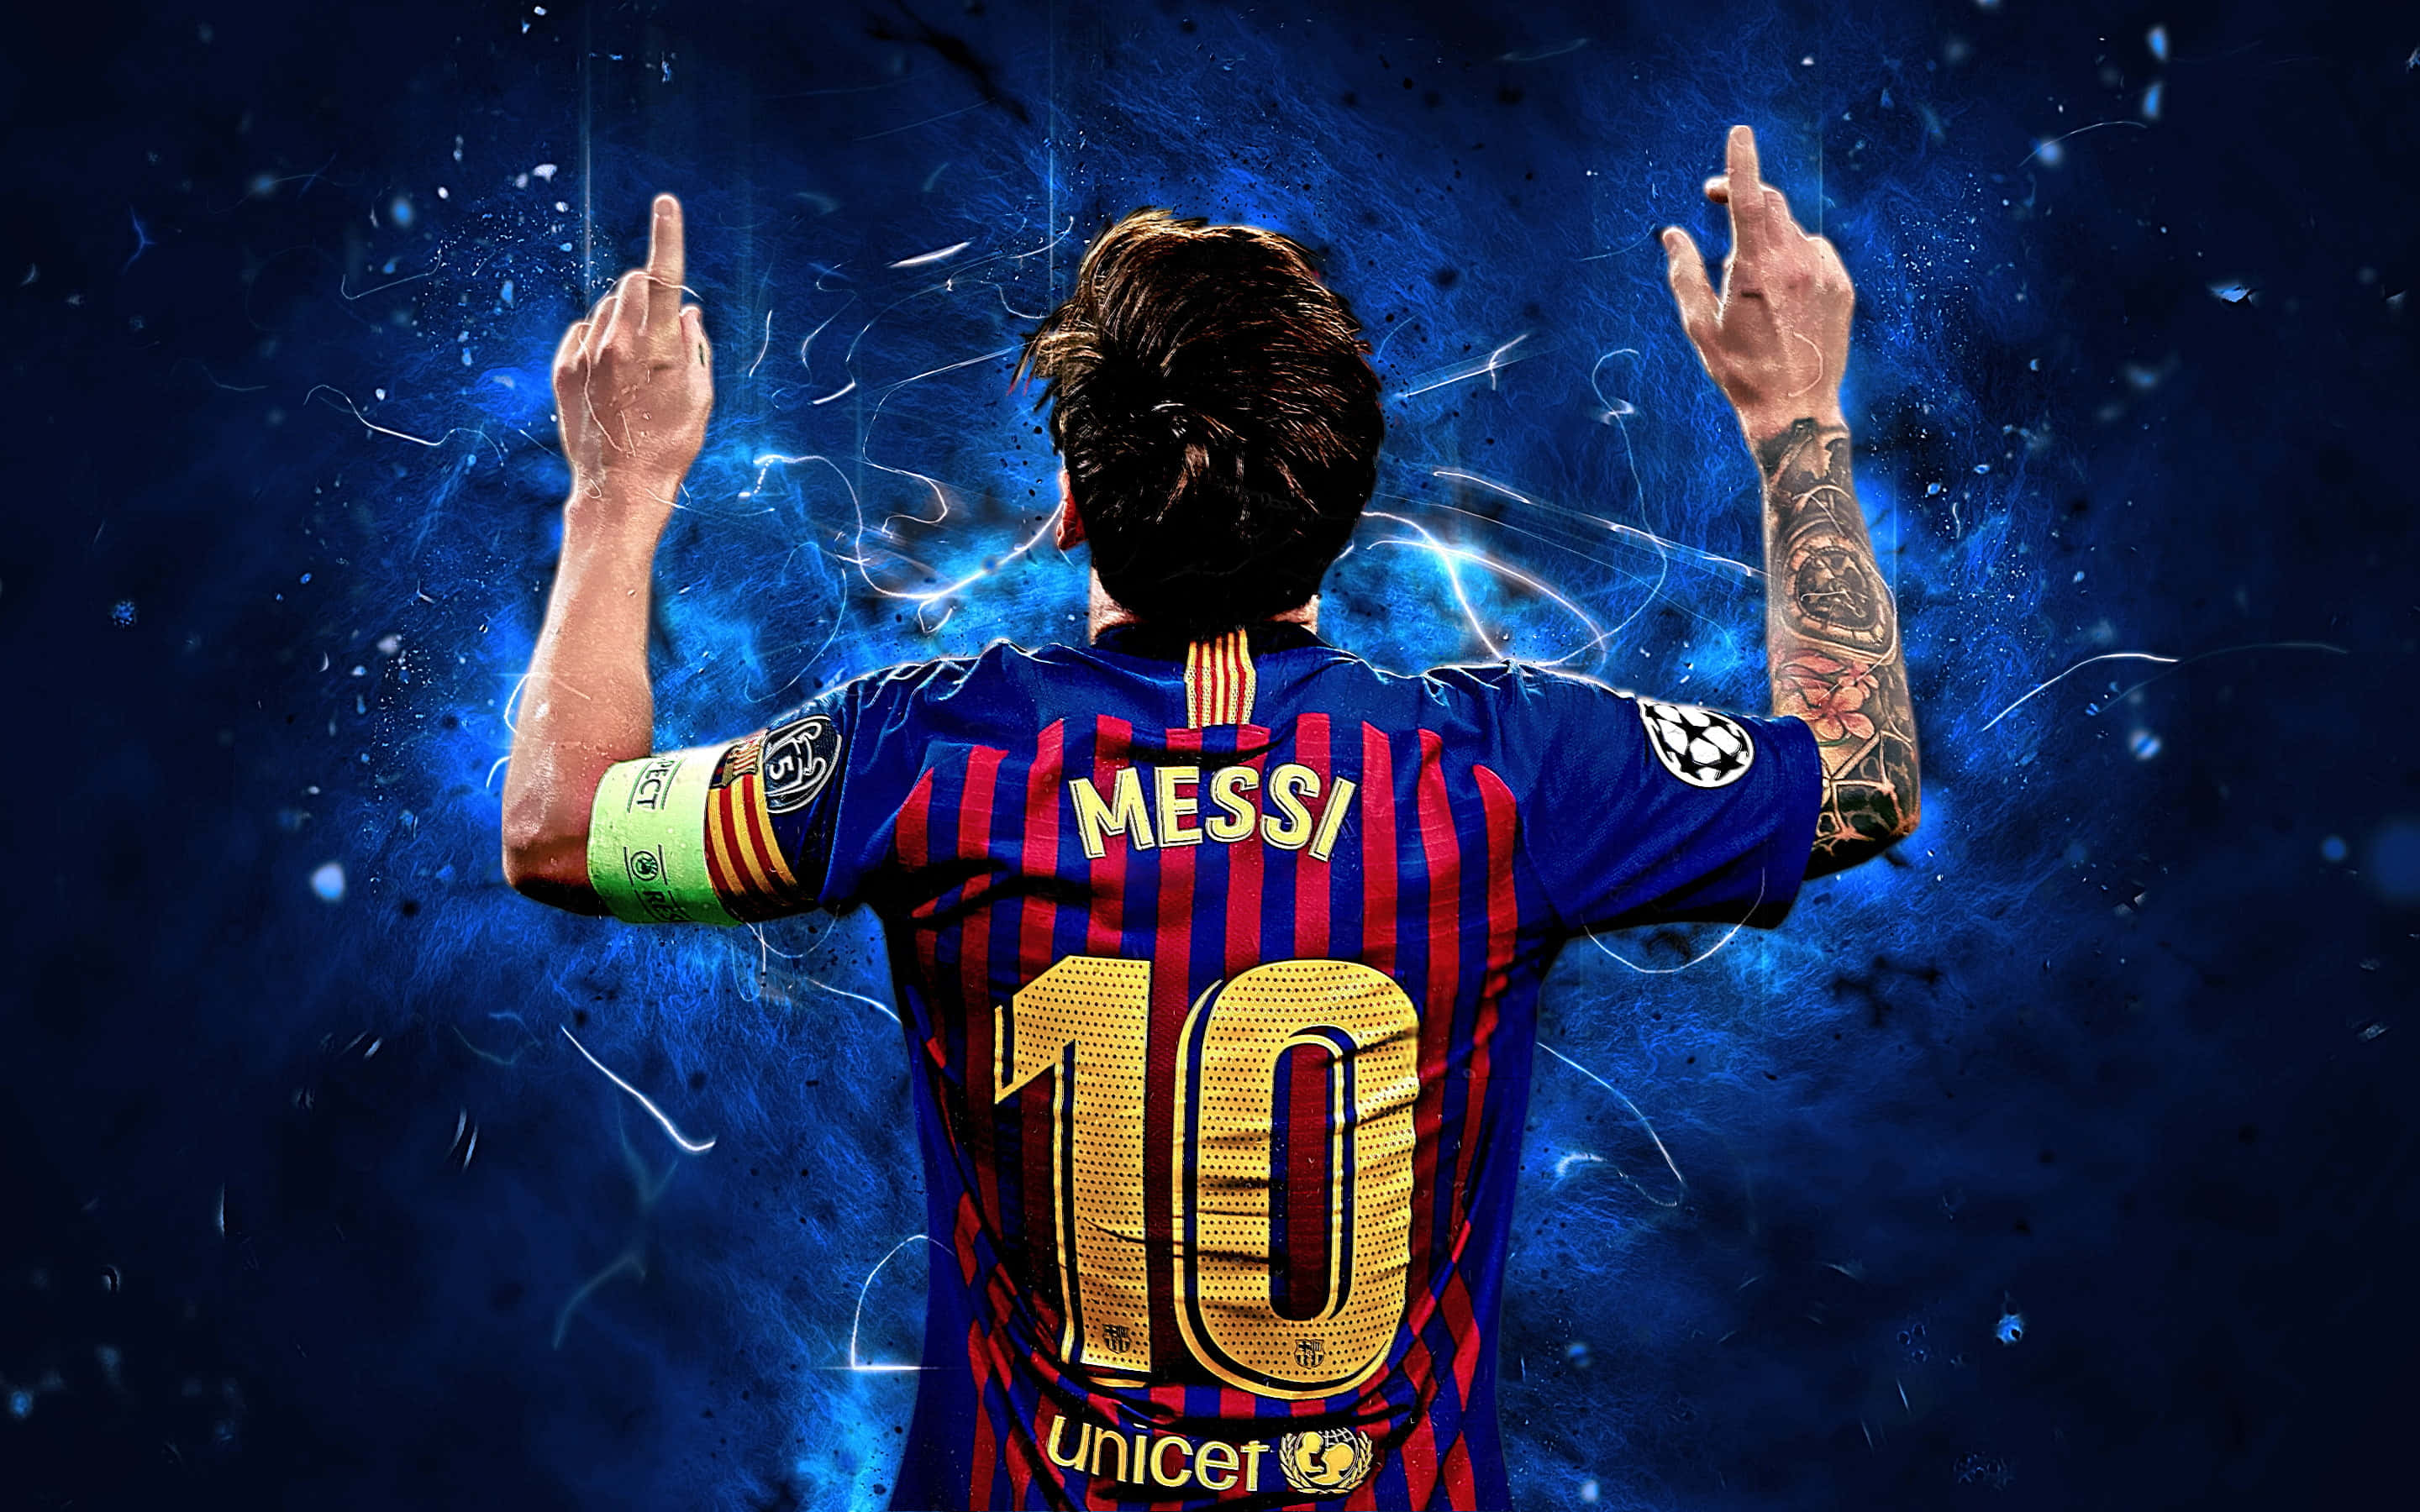 Denbästa Fotbollsspelaren På Planeten - Lionel Messi